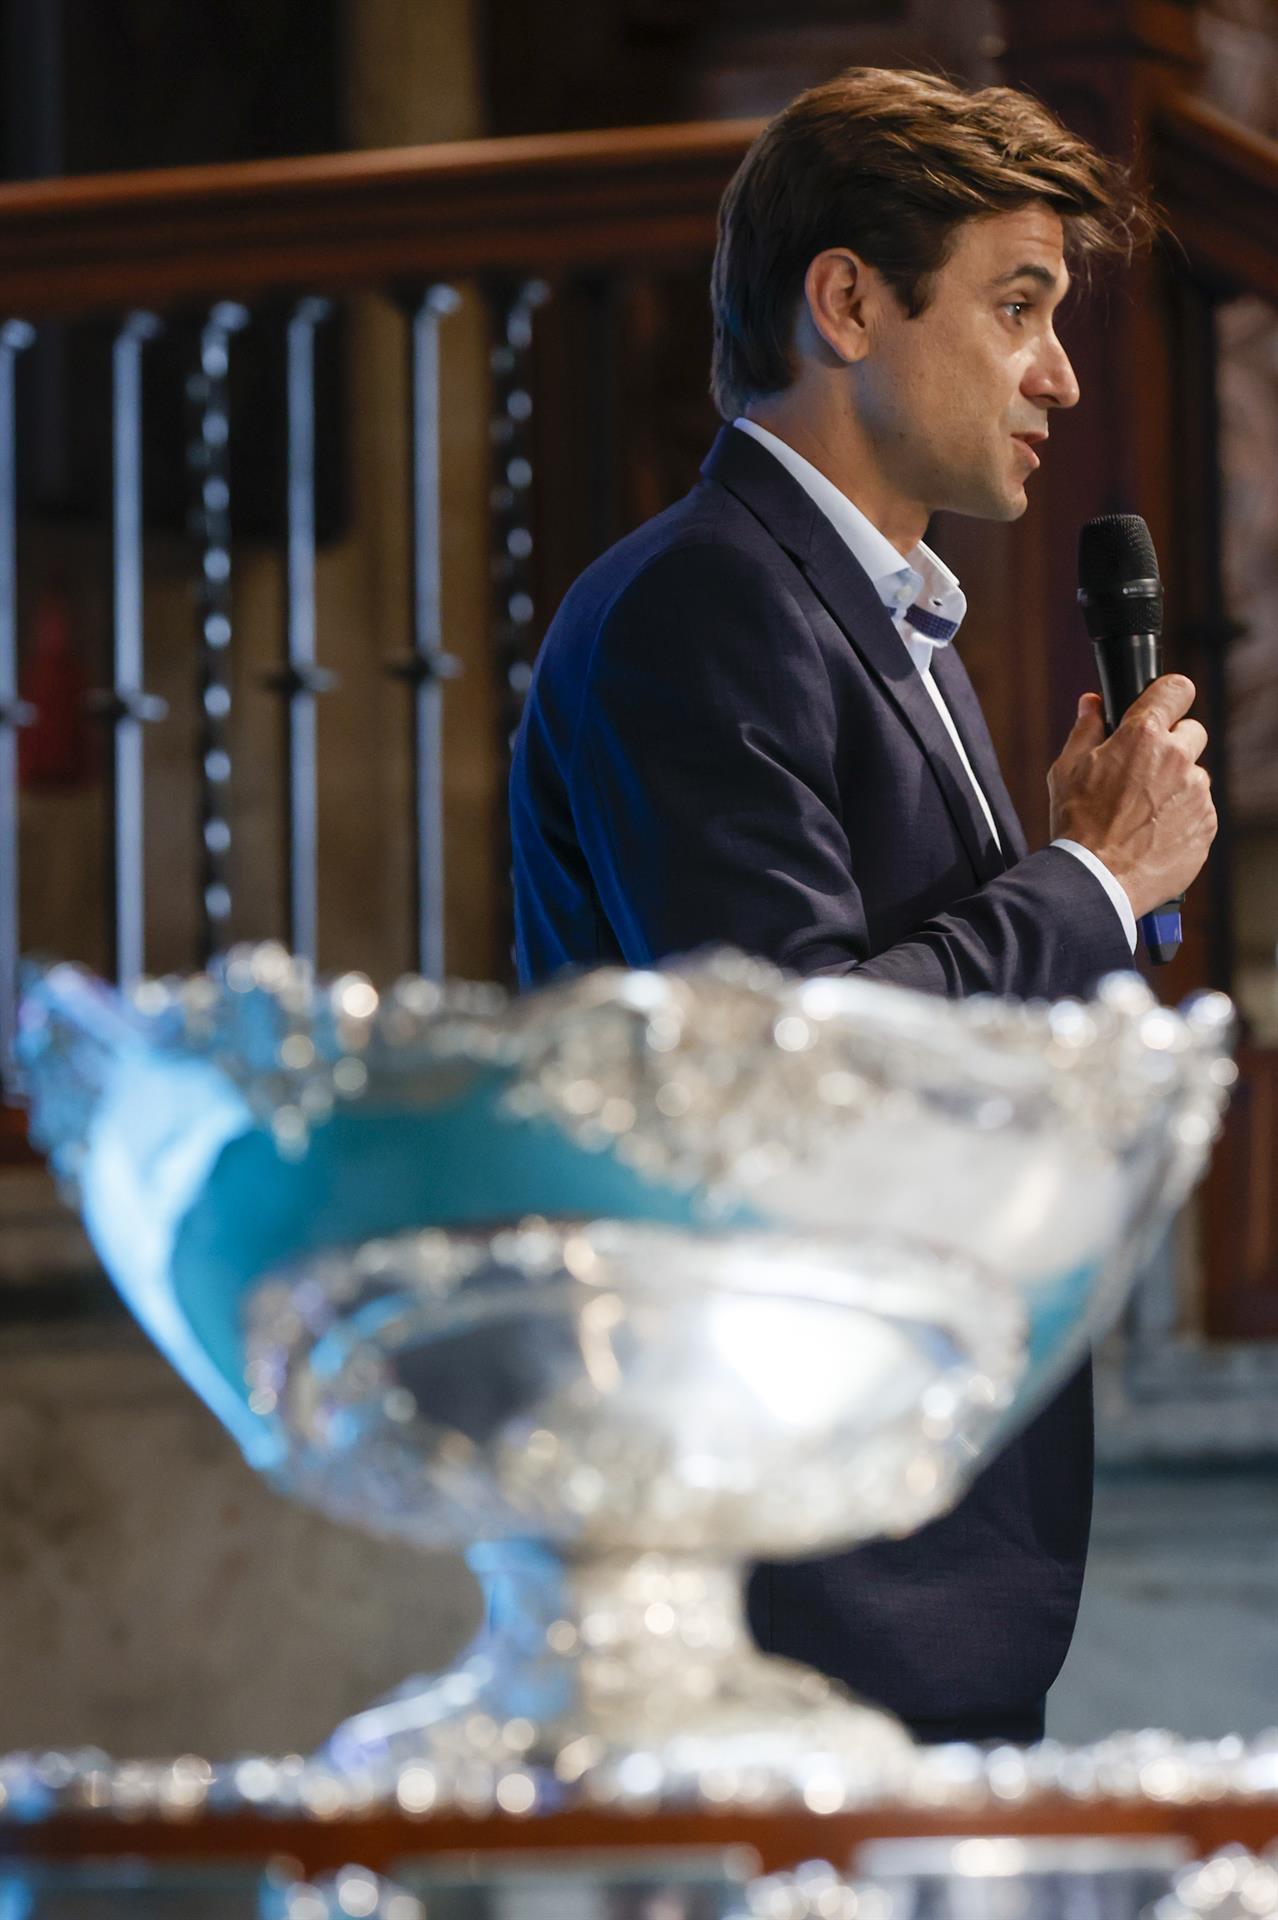 El tenista David Ferrer, interviene durante a la presentación a los medios de comunicación de la fase de grupos de la Copa Davis, que se disputará en València entre el 13 y el 18 de septiembre.EFE/ Kai Forsterling